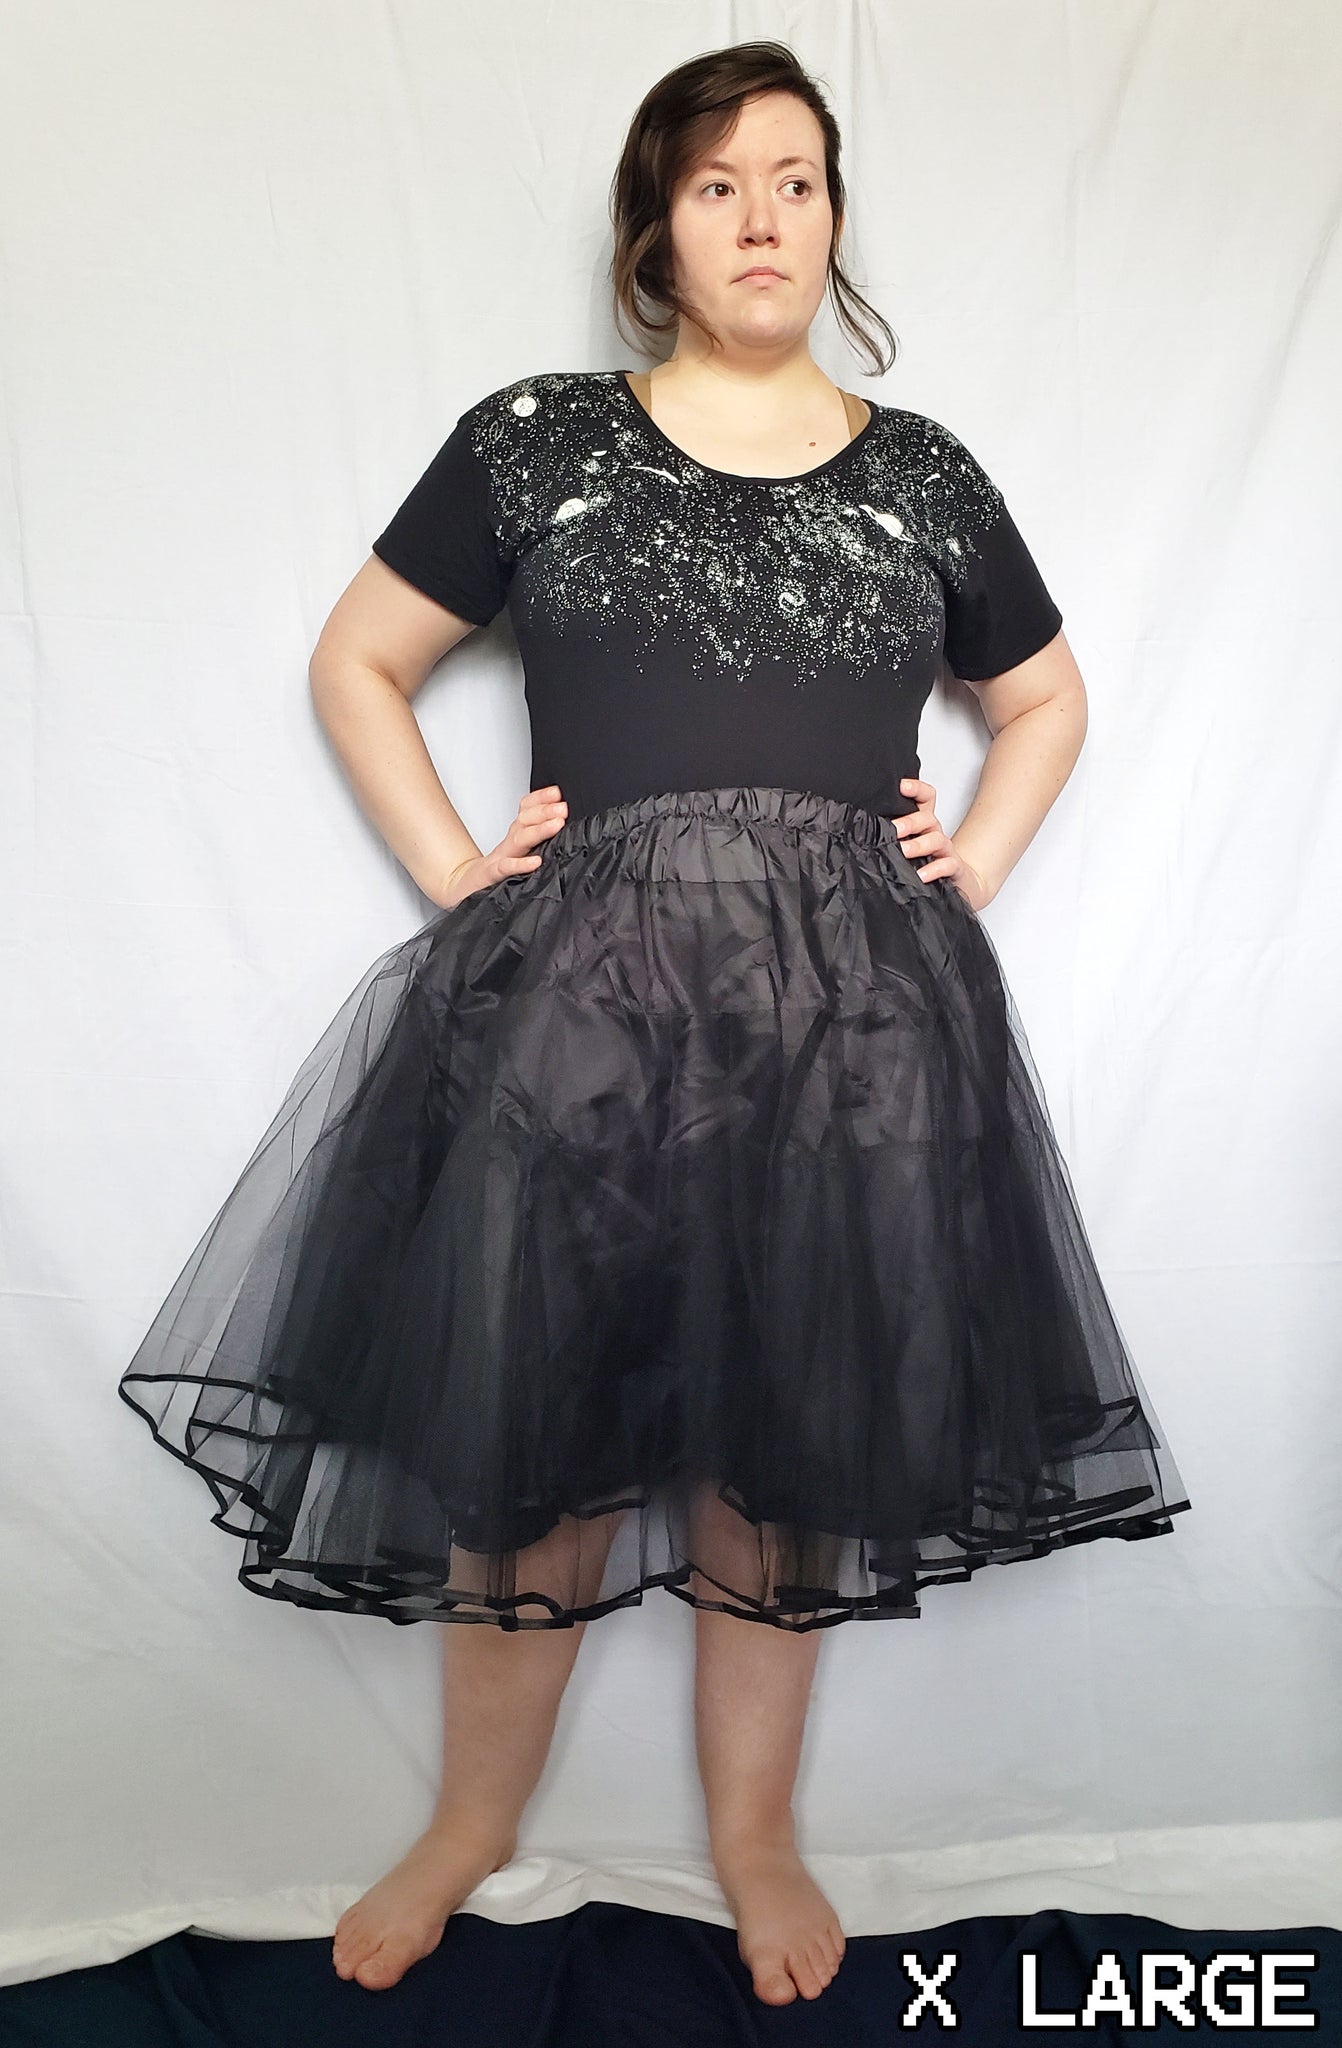 Petticoat for Skirts (Black) - Knee-Length – Fresh Hot Flavors